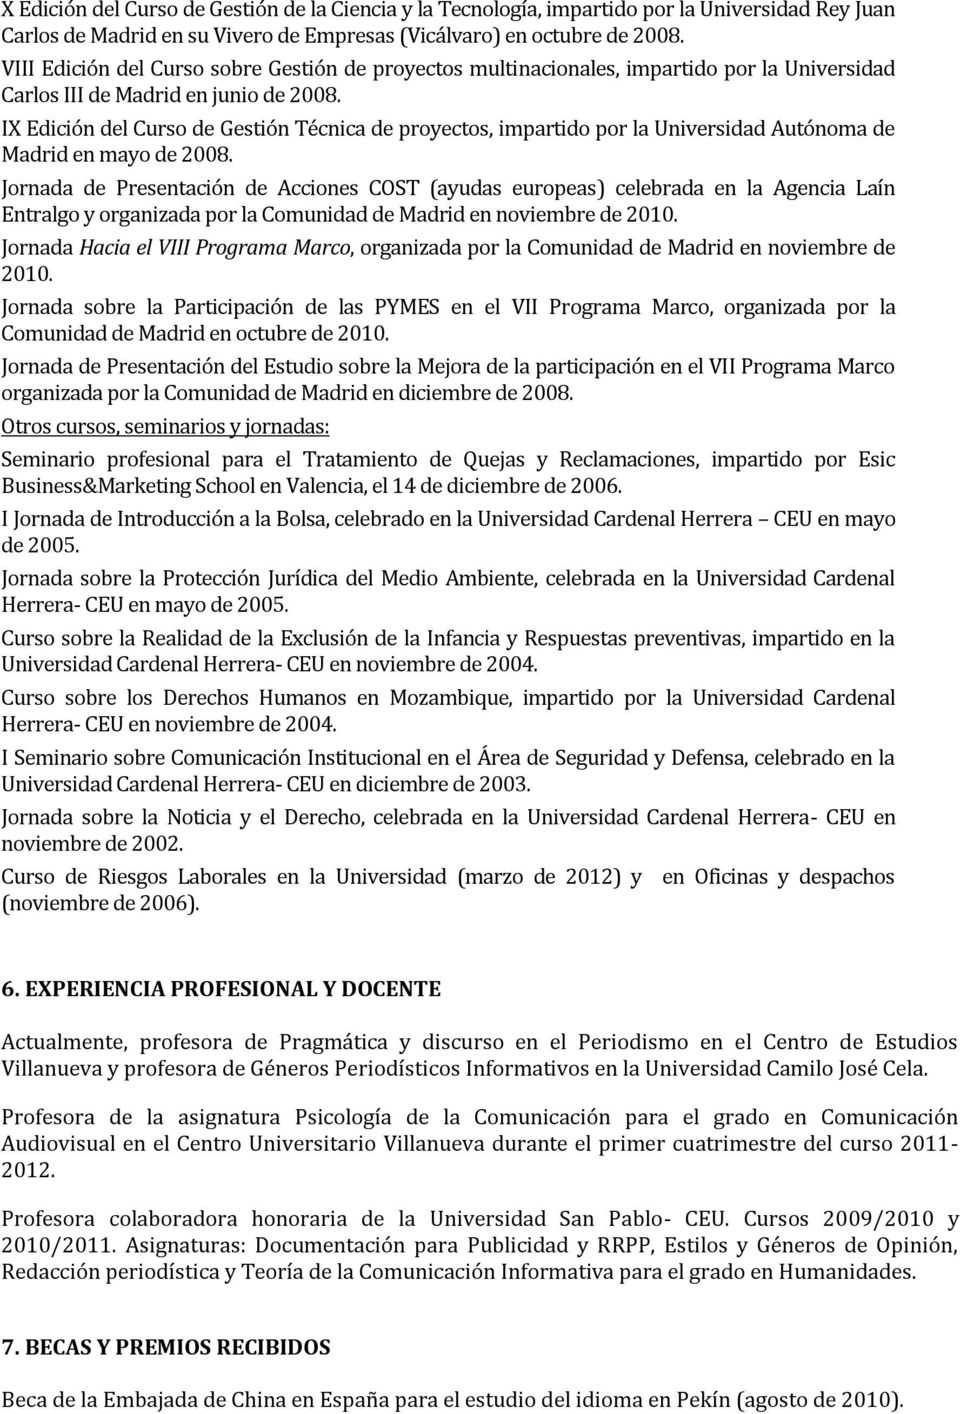 IX Edición del Curso de Gestión Técnica de proyectos, impartido por la Universidad Autónoma de Madrid en mayo de 2008.